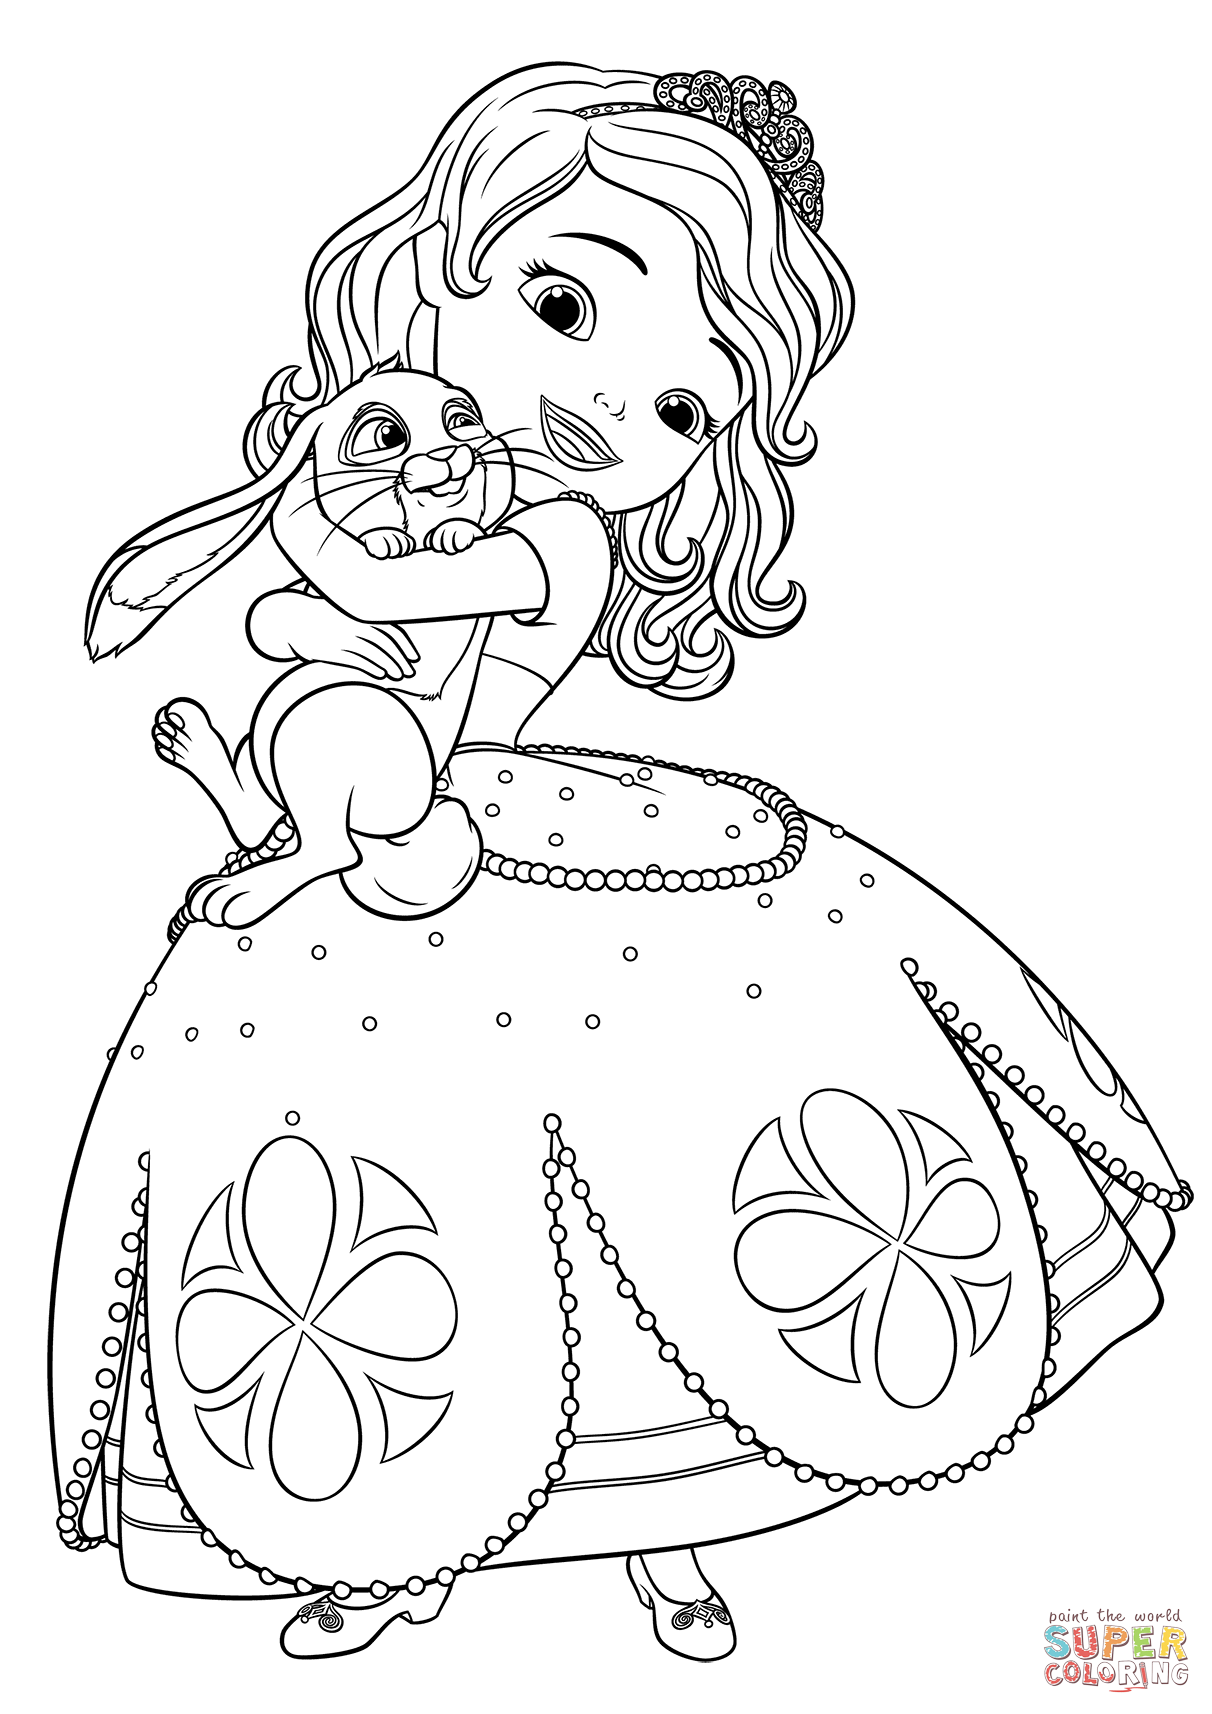  раскраски с принцессой София для детей   раскраски на тему принцесса София для мальчиков и девочек. Интересные раскраски с персонажами мультфильма про принцессу Софию для детей    